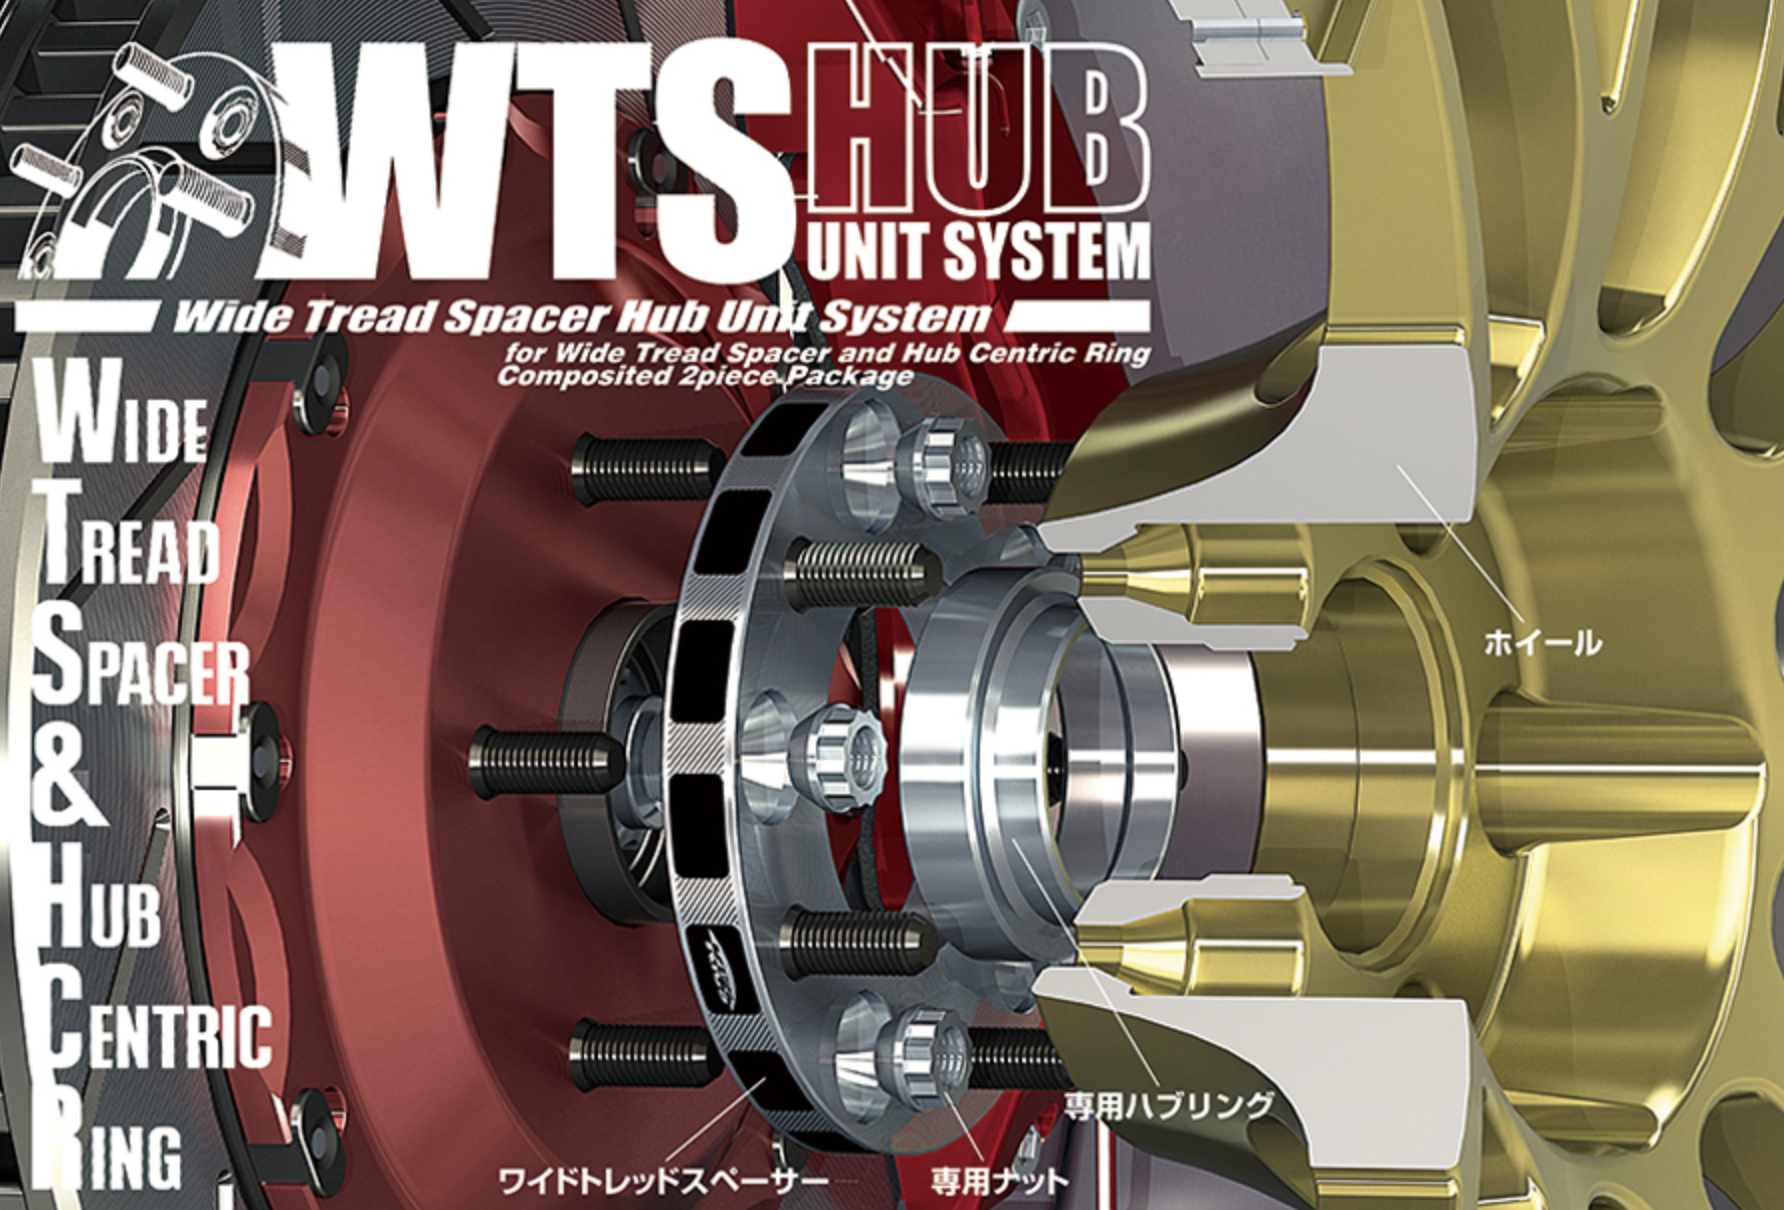 Project Kics - W.T.S. Hub Unit System